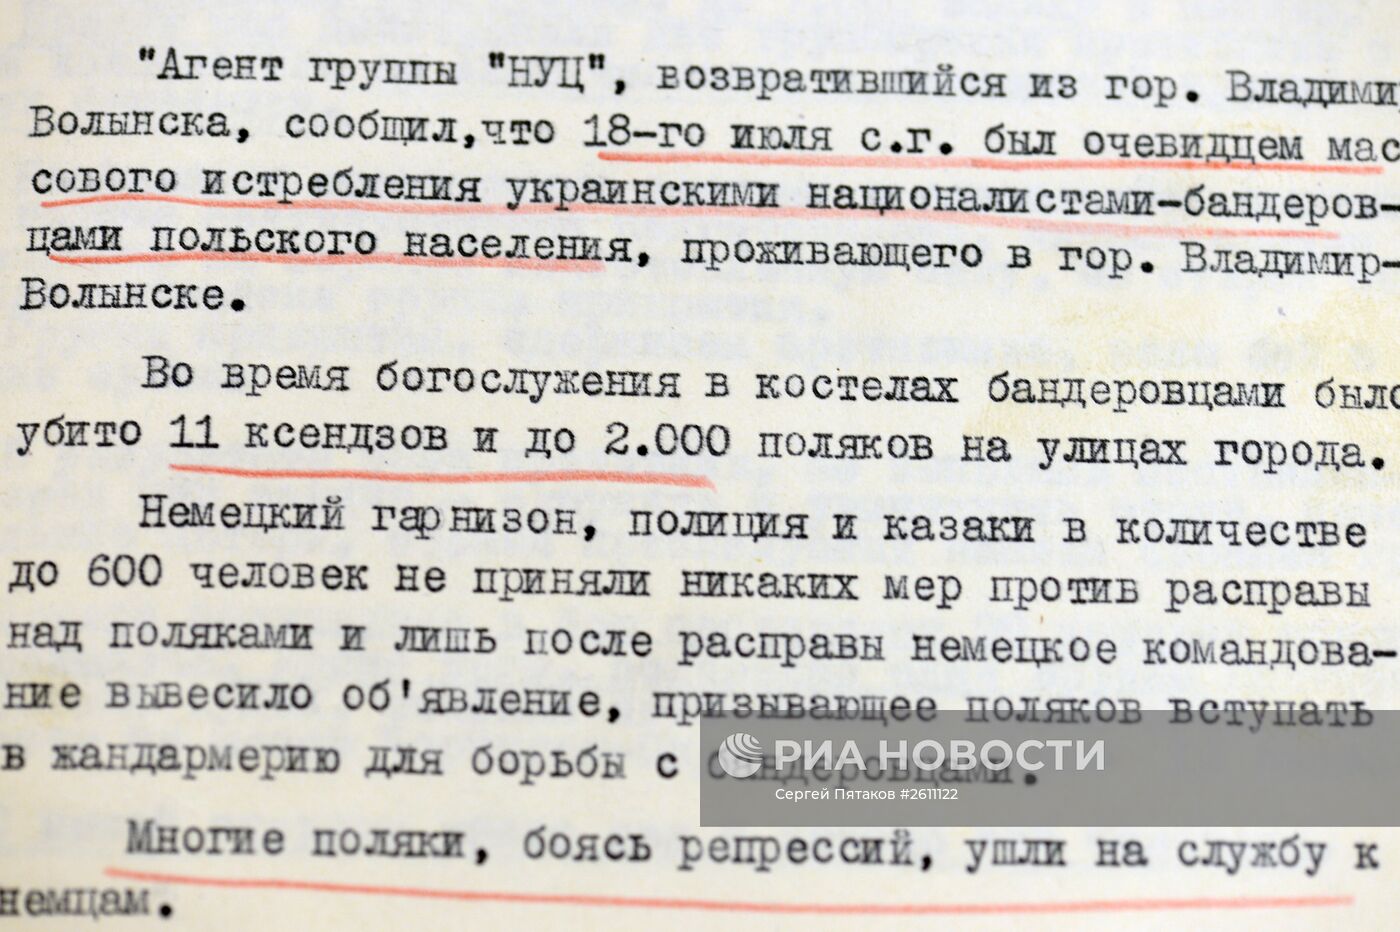 Архивные документы ФСБ РФ о деятельности Украинских националистов в период ВОВ